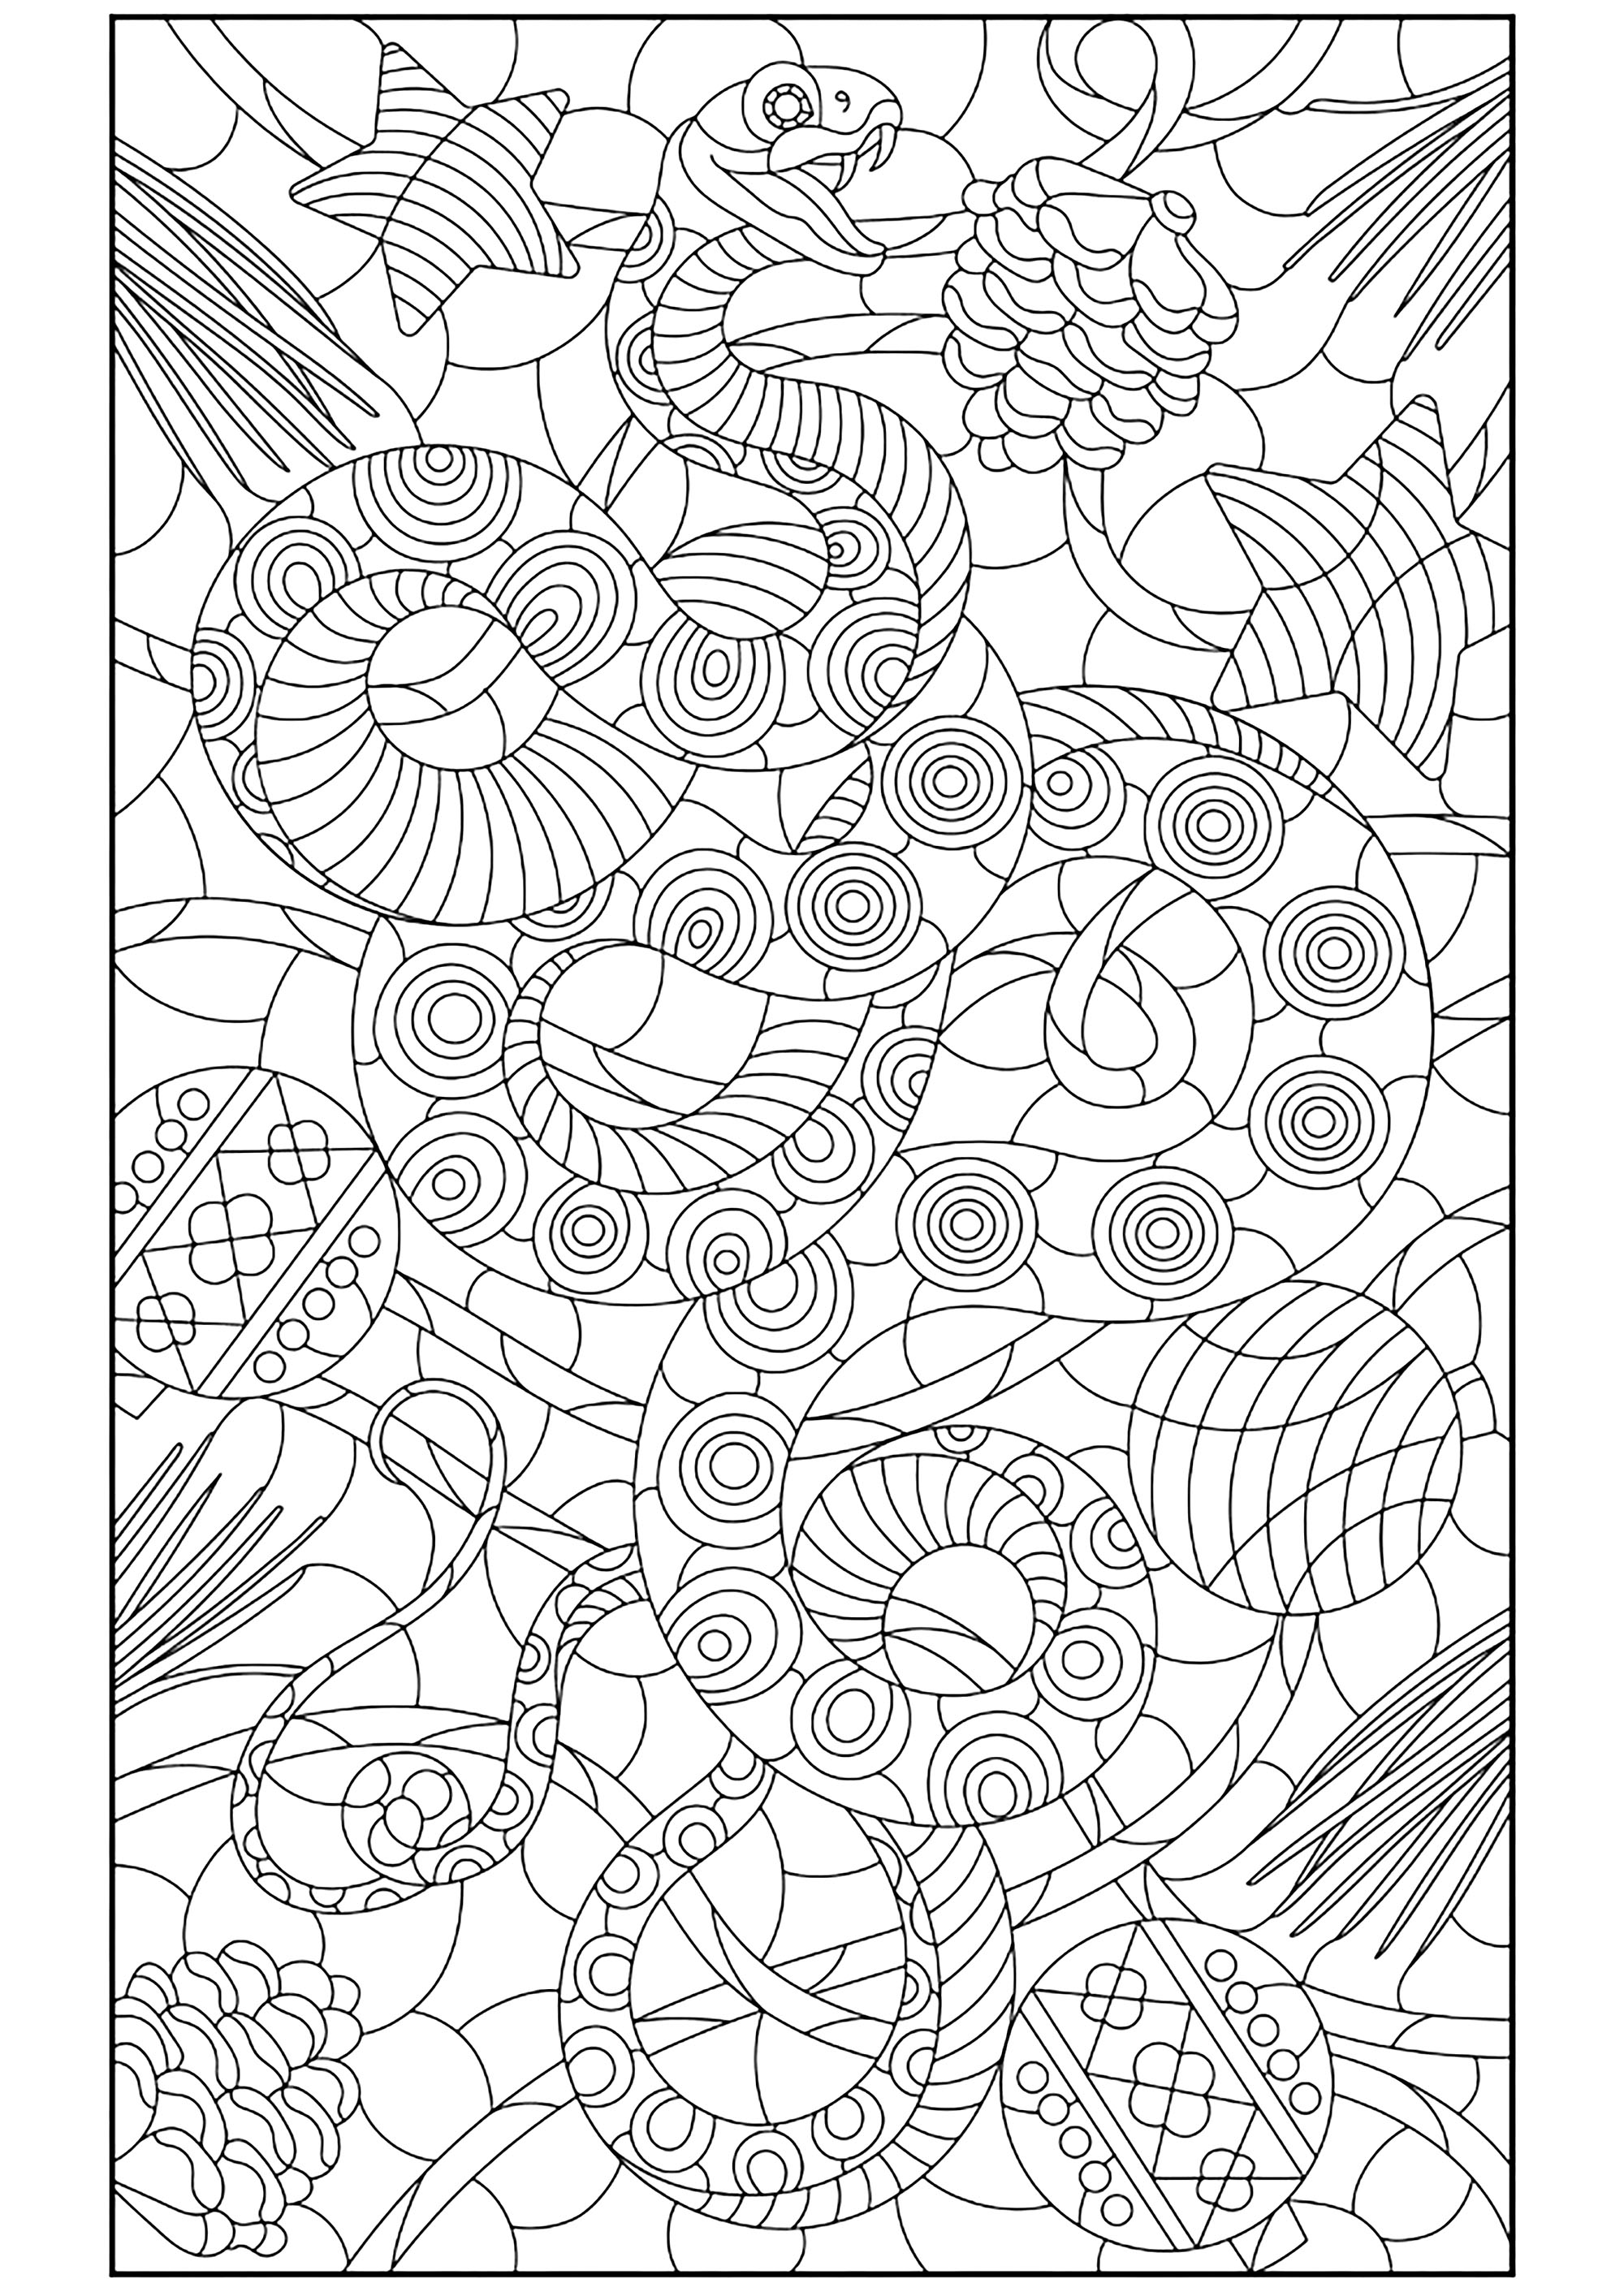 Serpent et motifs diversifiés. Un sublime coloriage dont le dessin a été réalisé avec une finesse extrême, Source : 123rf   Artiste : zagory